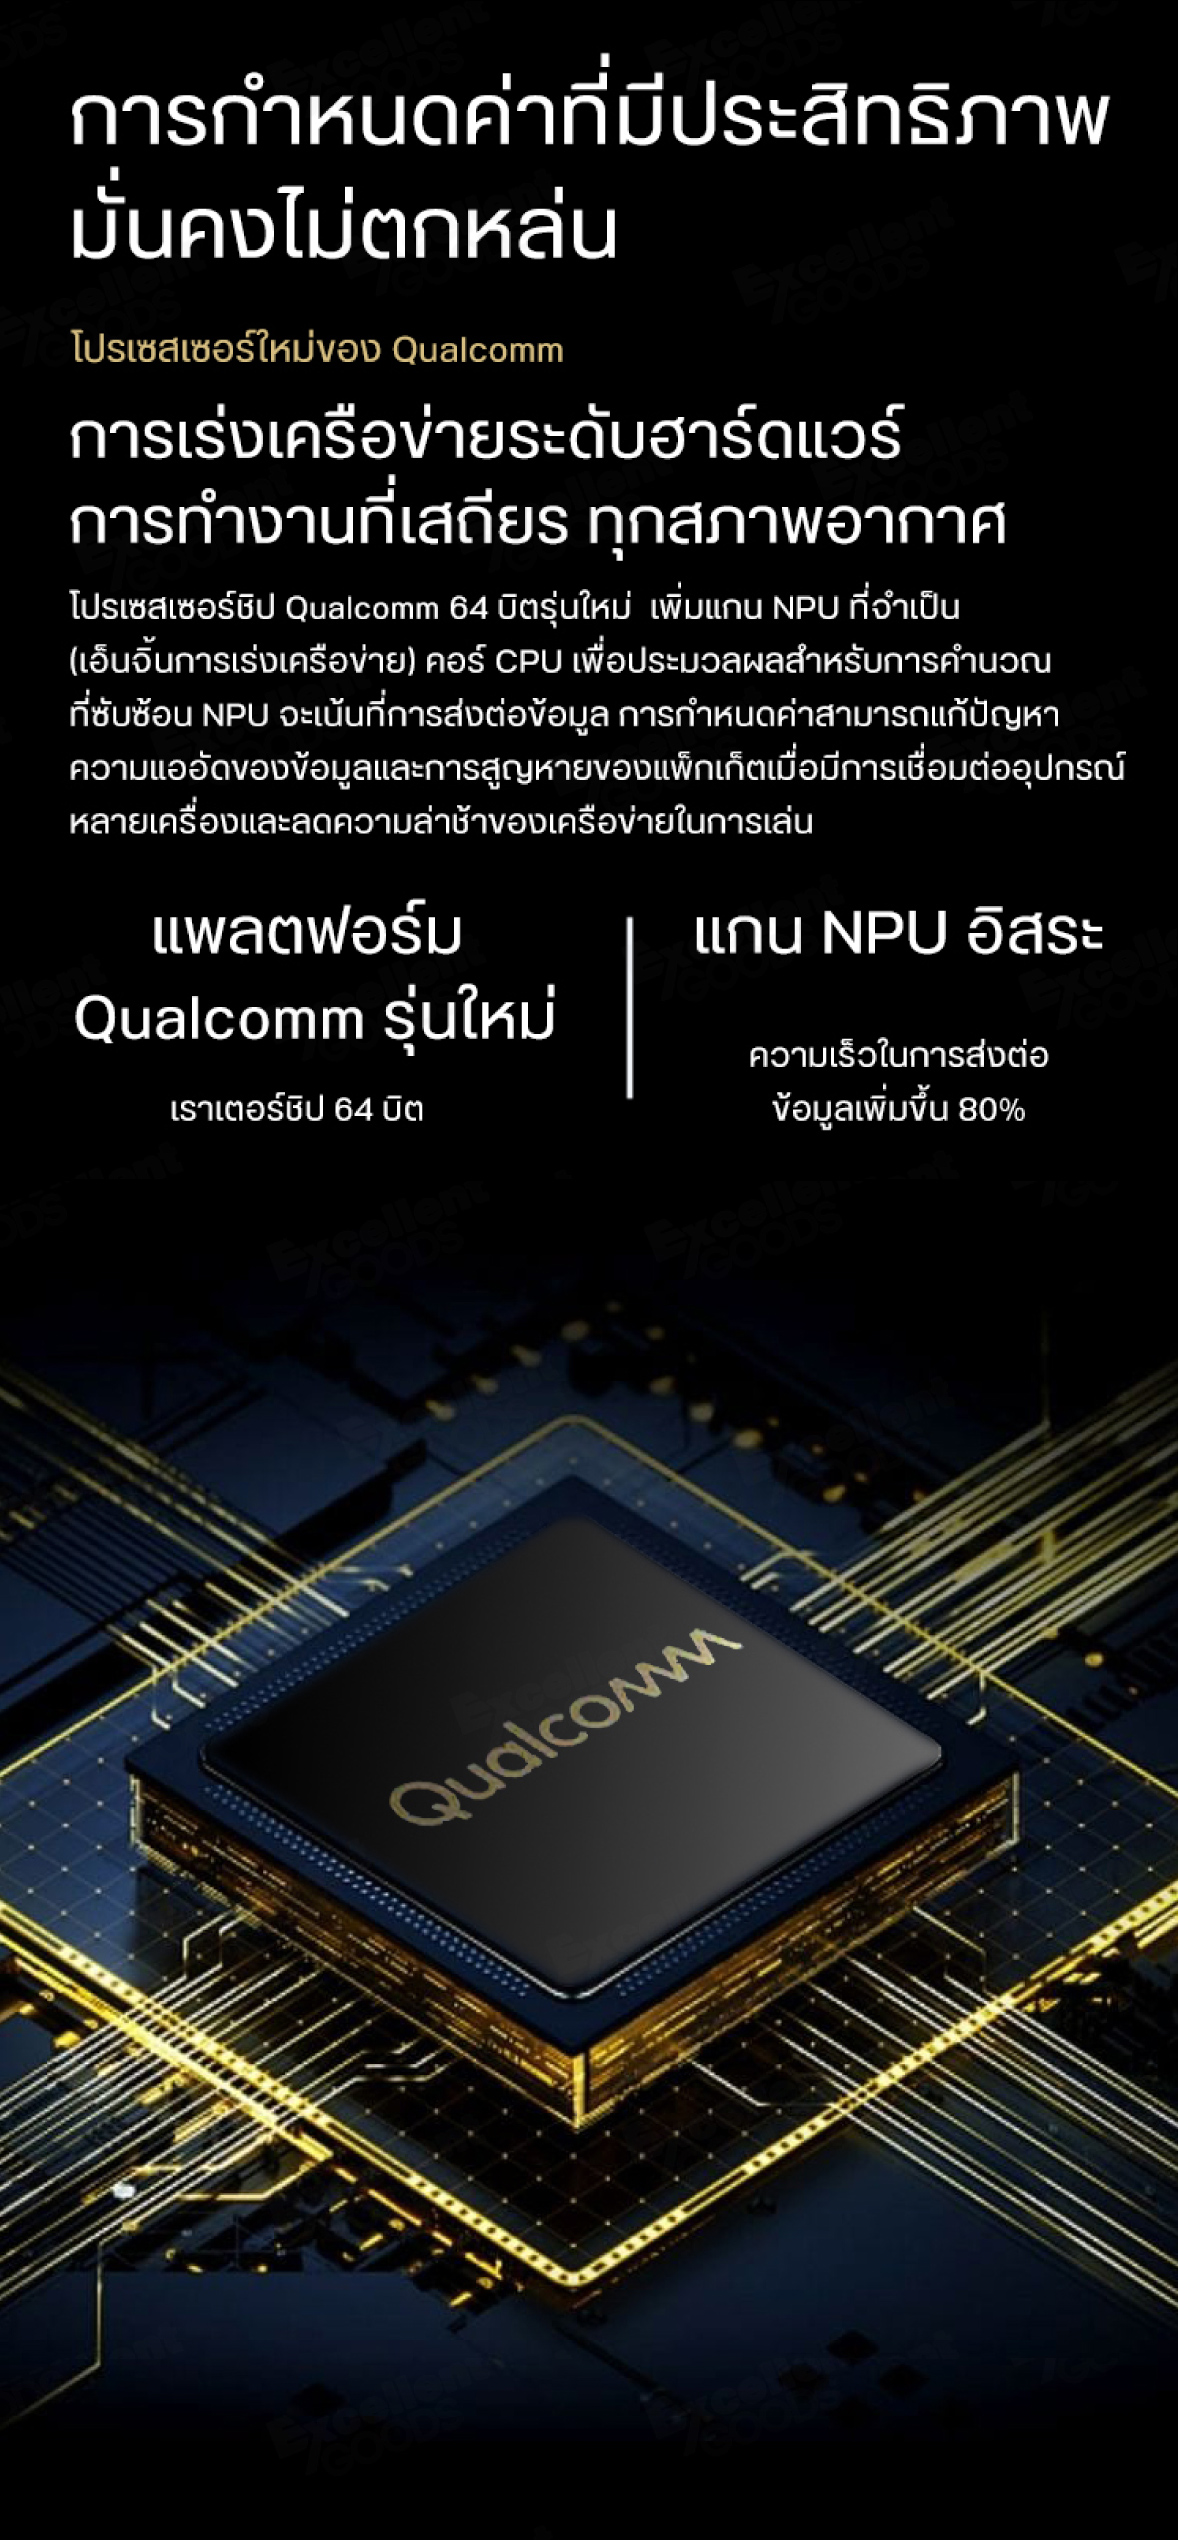 ข้อมูลเกี่ยวกับ Xiaomi Mi Router AX6000 AIoT WiFi 6/4K QAM รับส่งข้อมูลเร็วถึง เราเตอร์รูปแบบใหม่ รุ่นปรับปรุง WiFi6 สัญญาณความถี่แรง อัพเกรดความเร็วสูงสุด 6000 Mbps